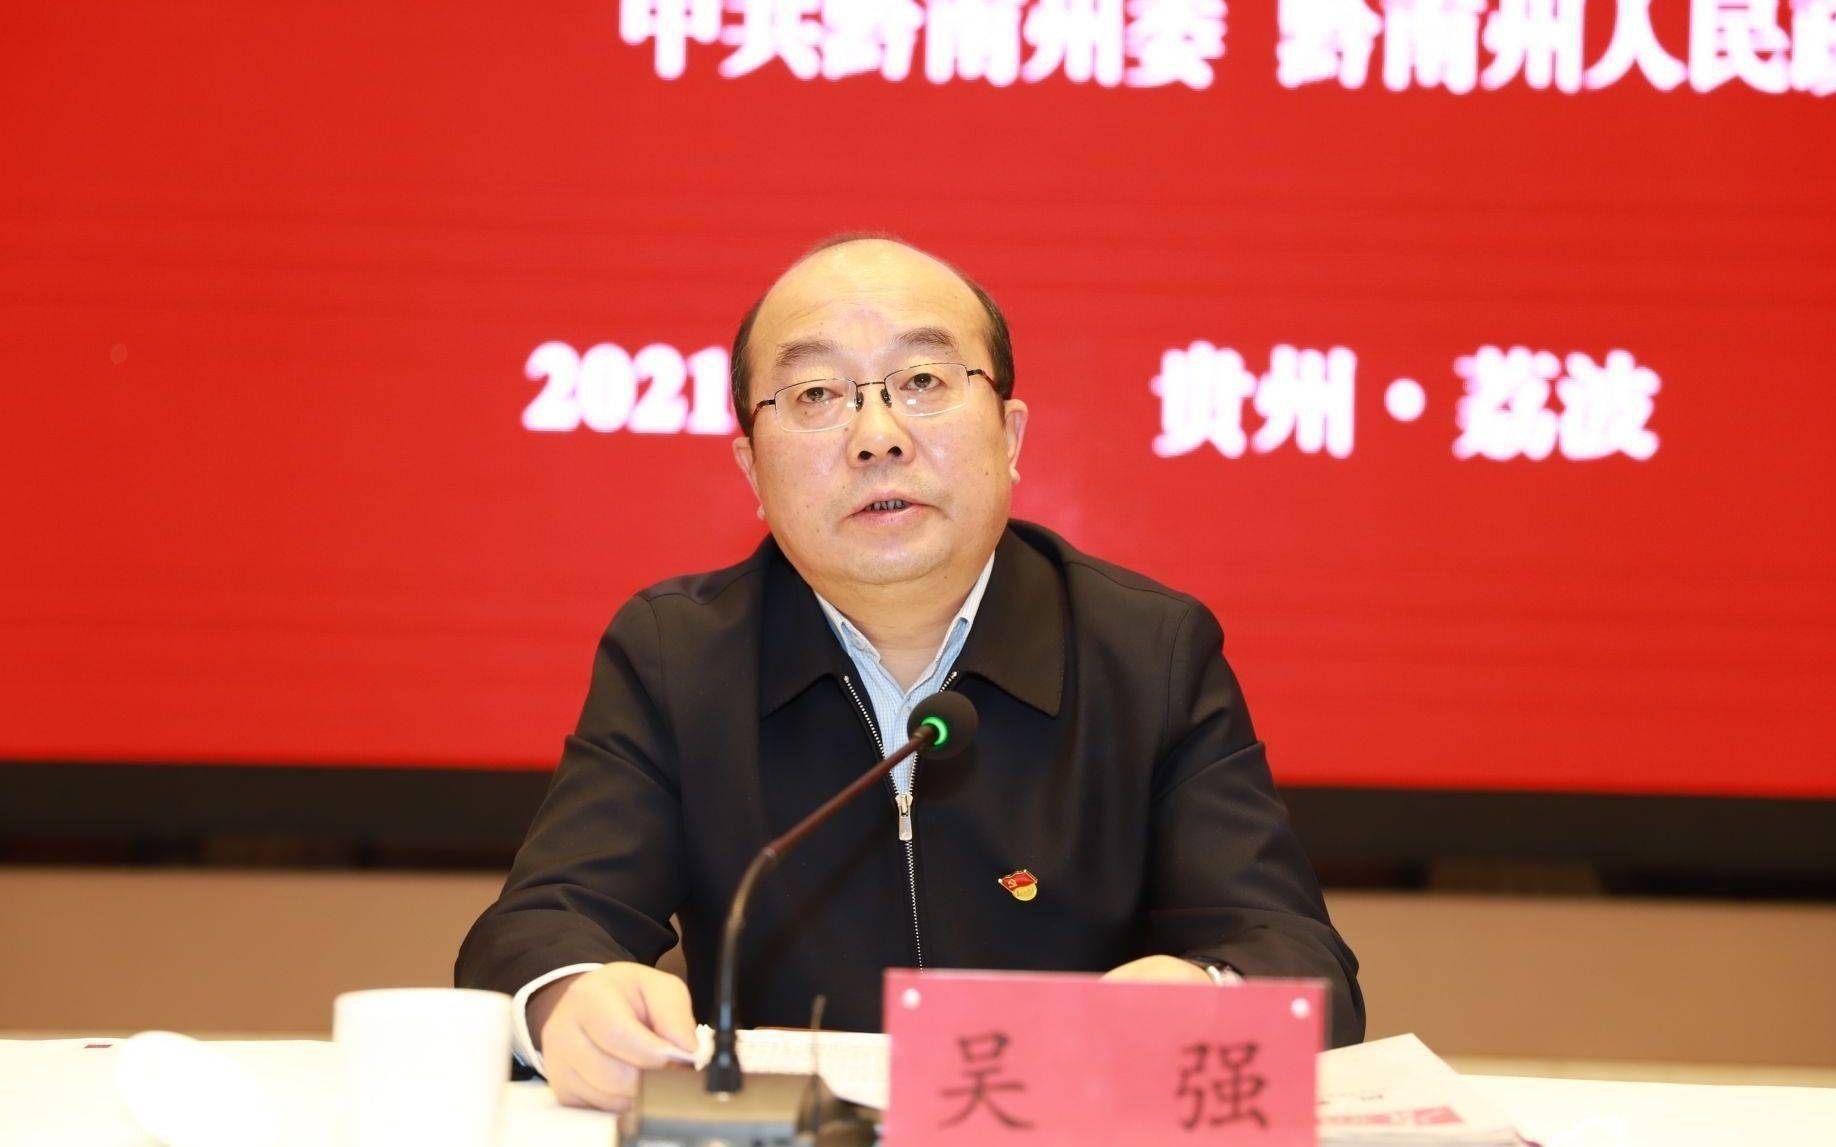 吴强于2018年1月任贵州省副省长,去年9月开始任贵州省委常委,省委秘书